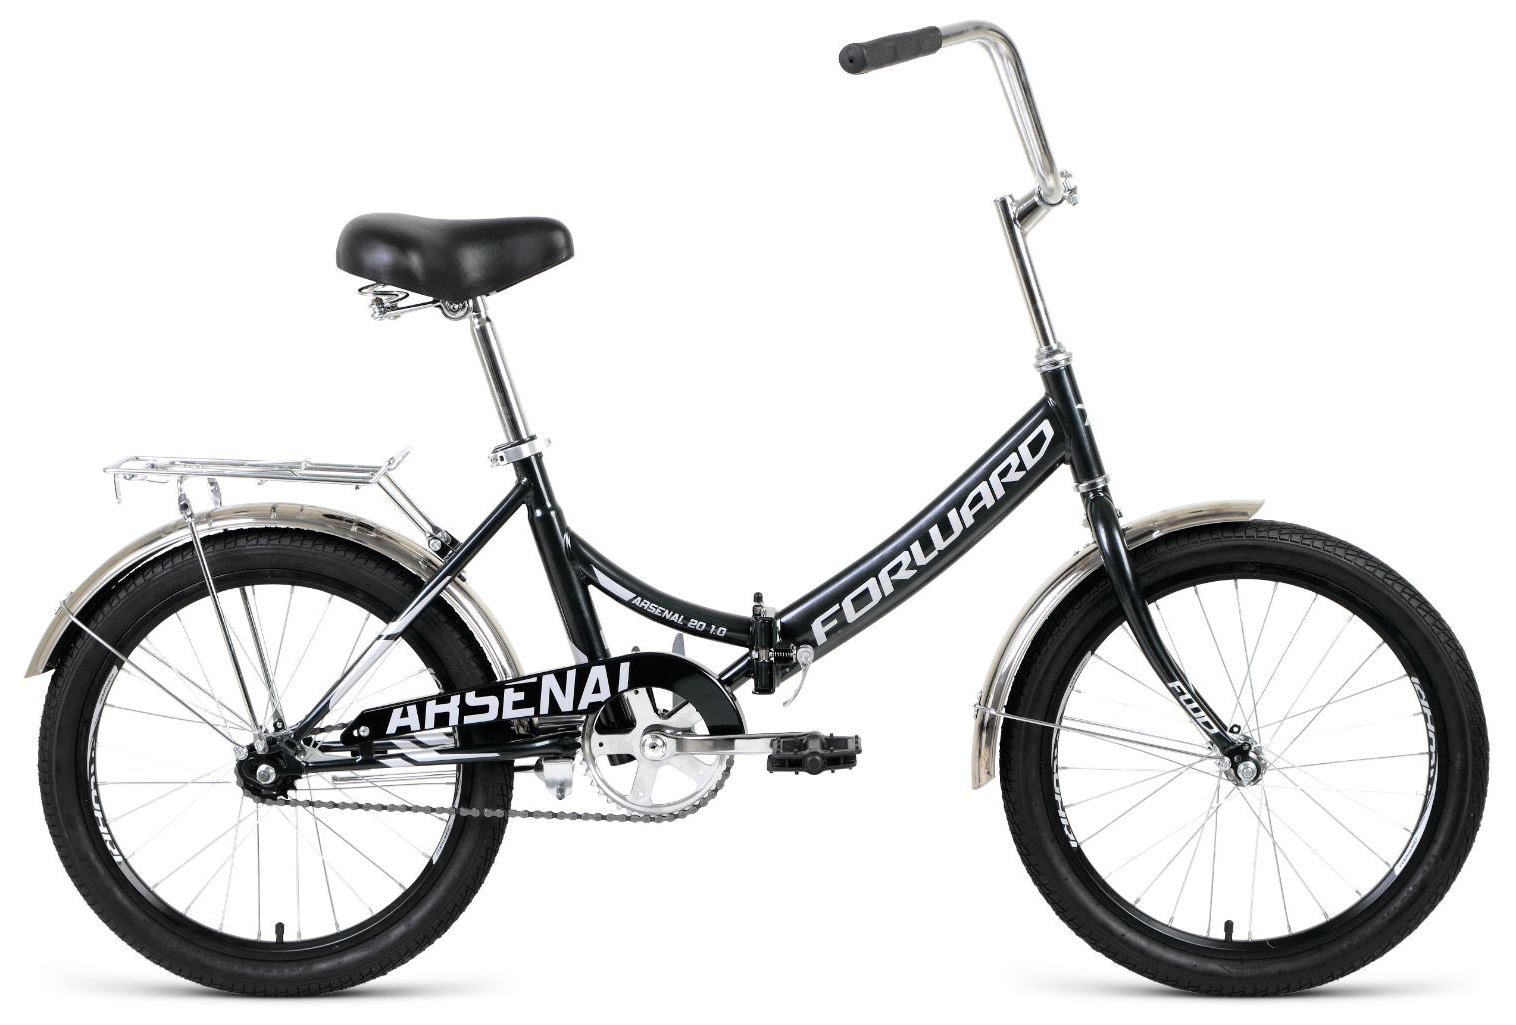  Велосипед трехколесный детский велосипед Forward Arsenal 20 1.0 2020